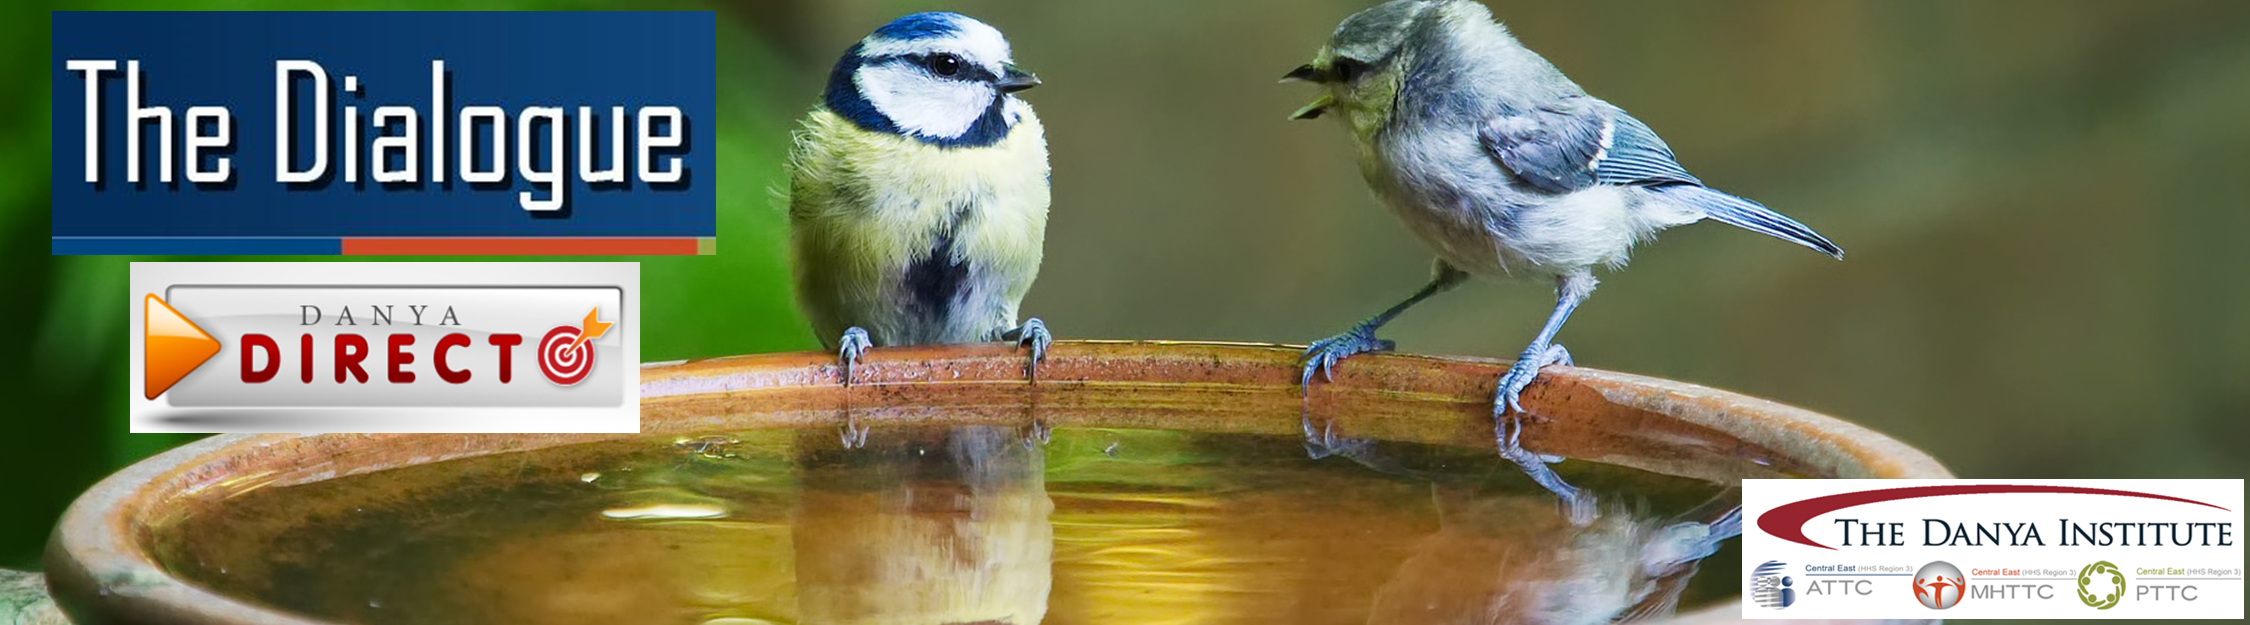 Two bluebirds chatting at a bird bath